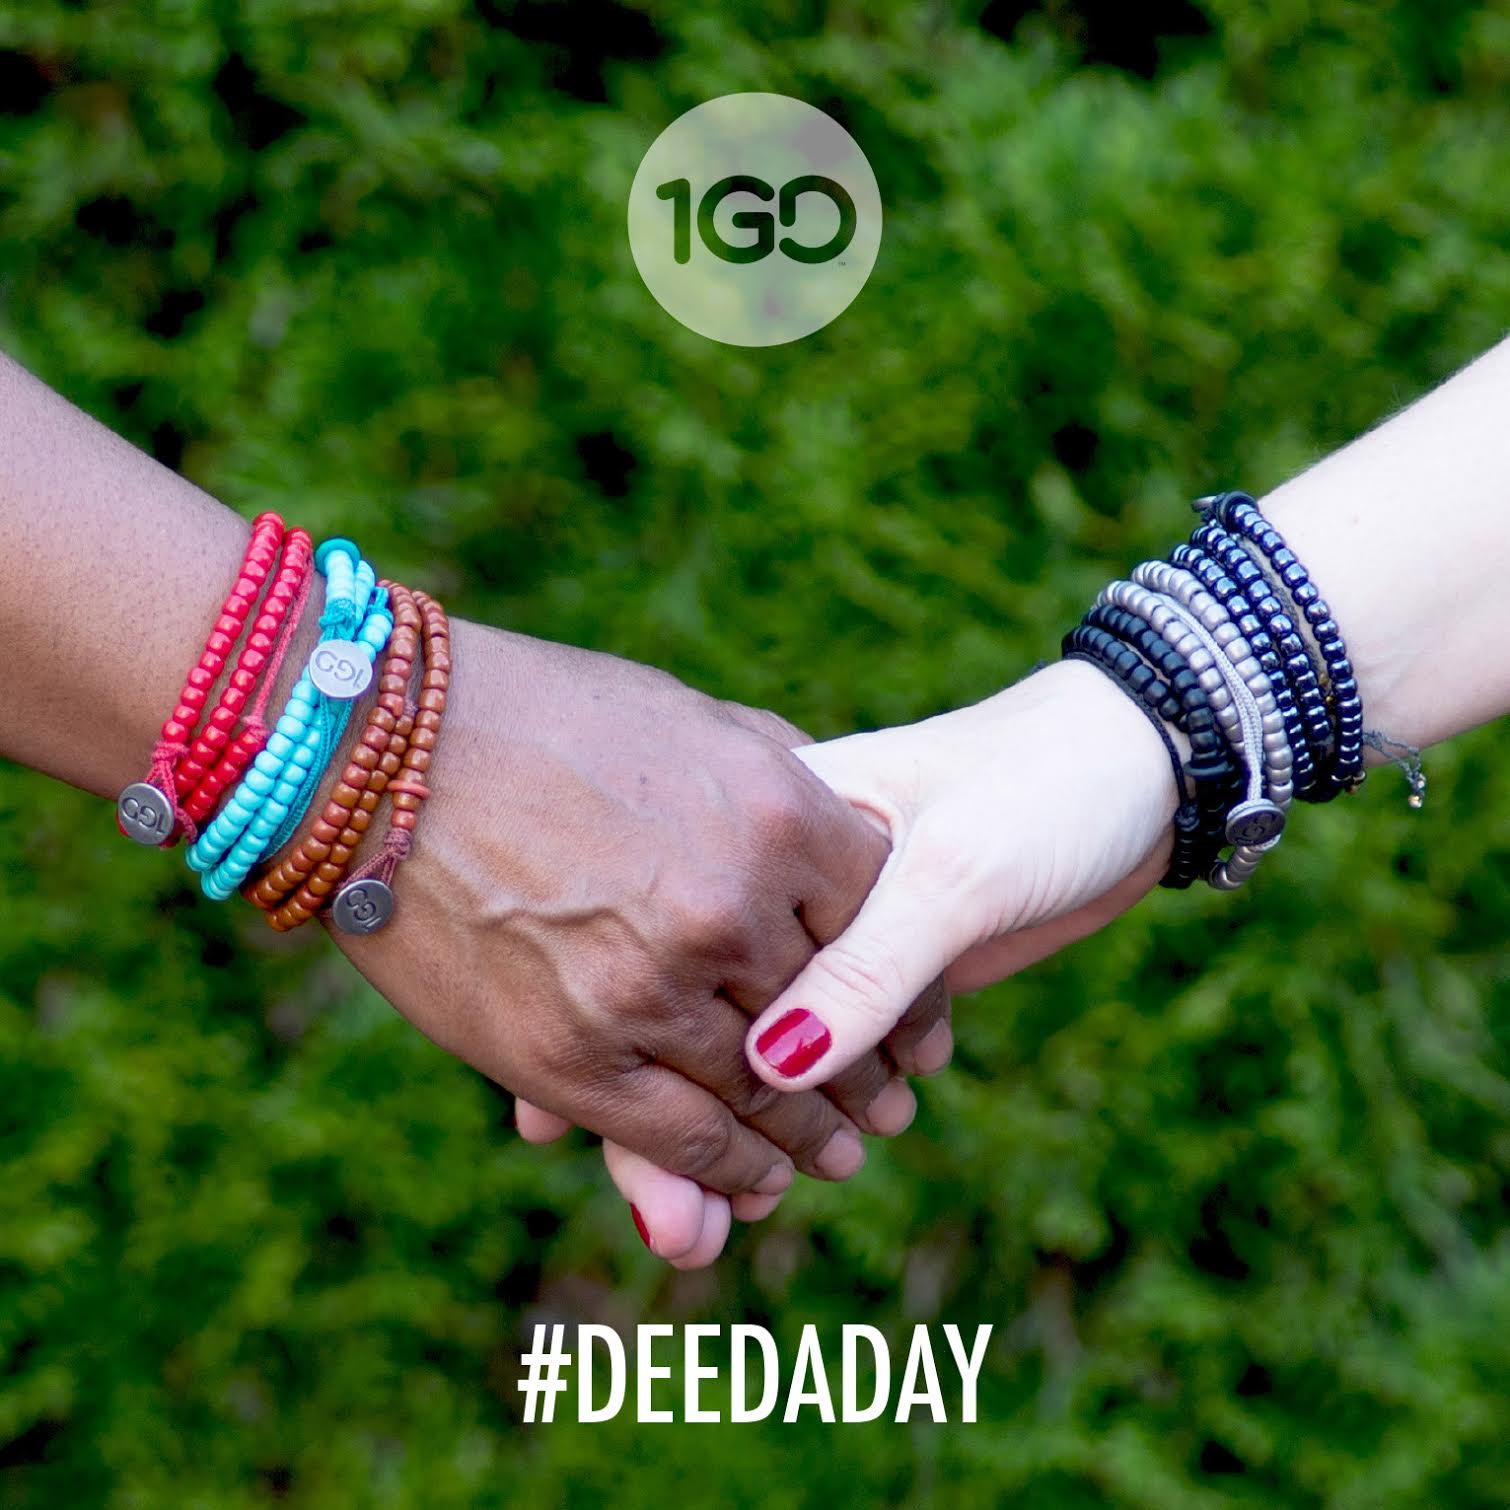 Actos Espontáneos de Amabilidad – The #DeedADay / 100 Good Deeds Movement